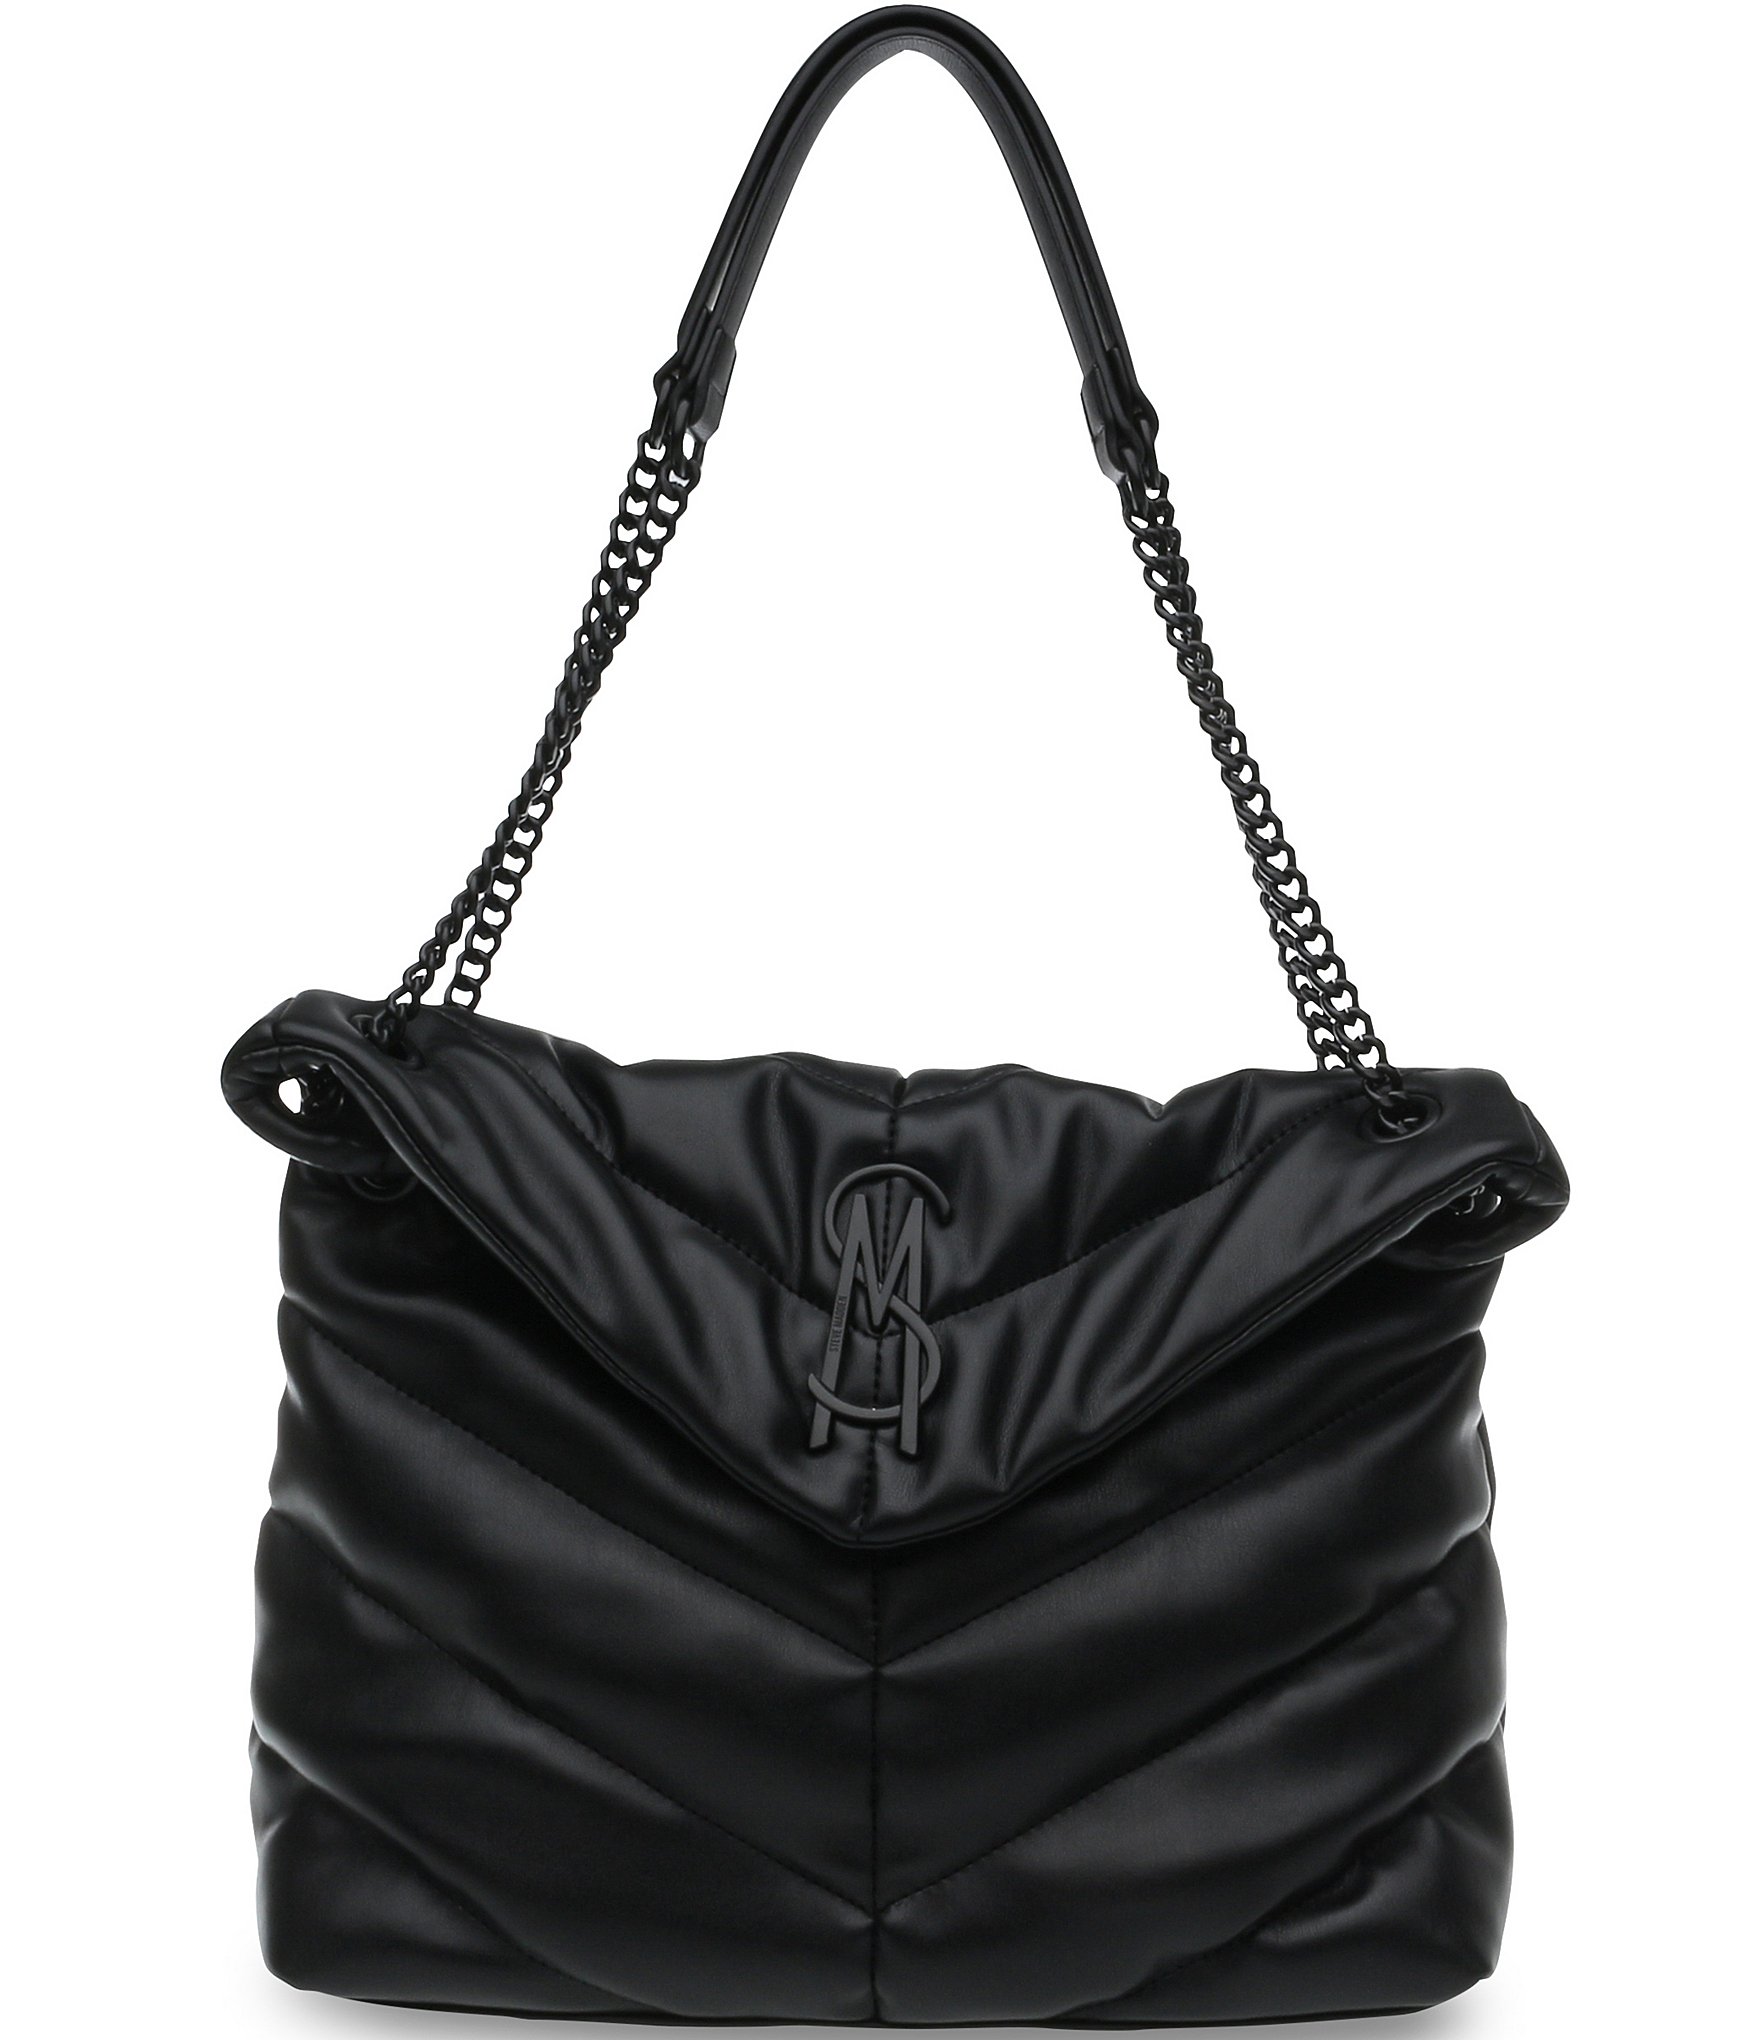 VITAL Bag Black Shoulder Bag  Black Shoulder Bag for Women – Steve Madden